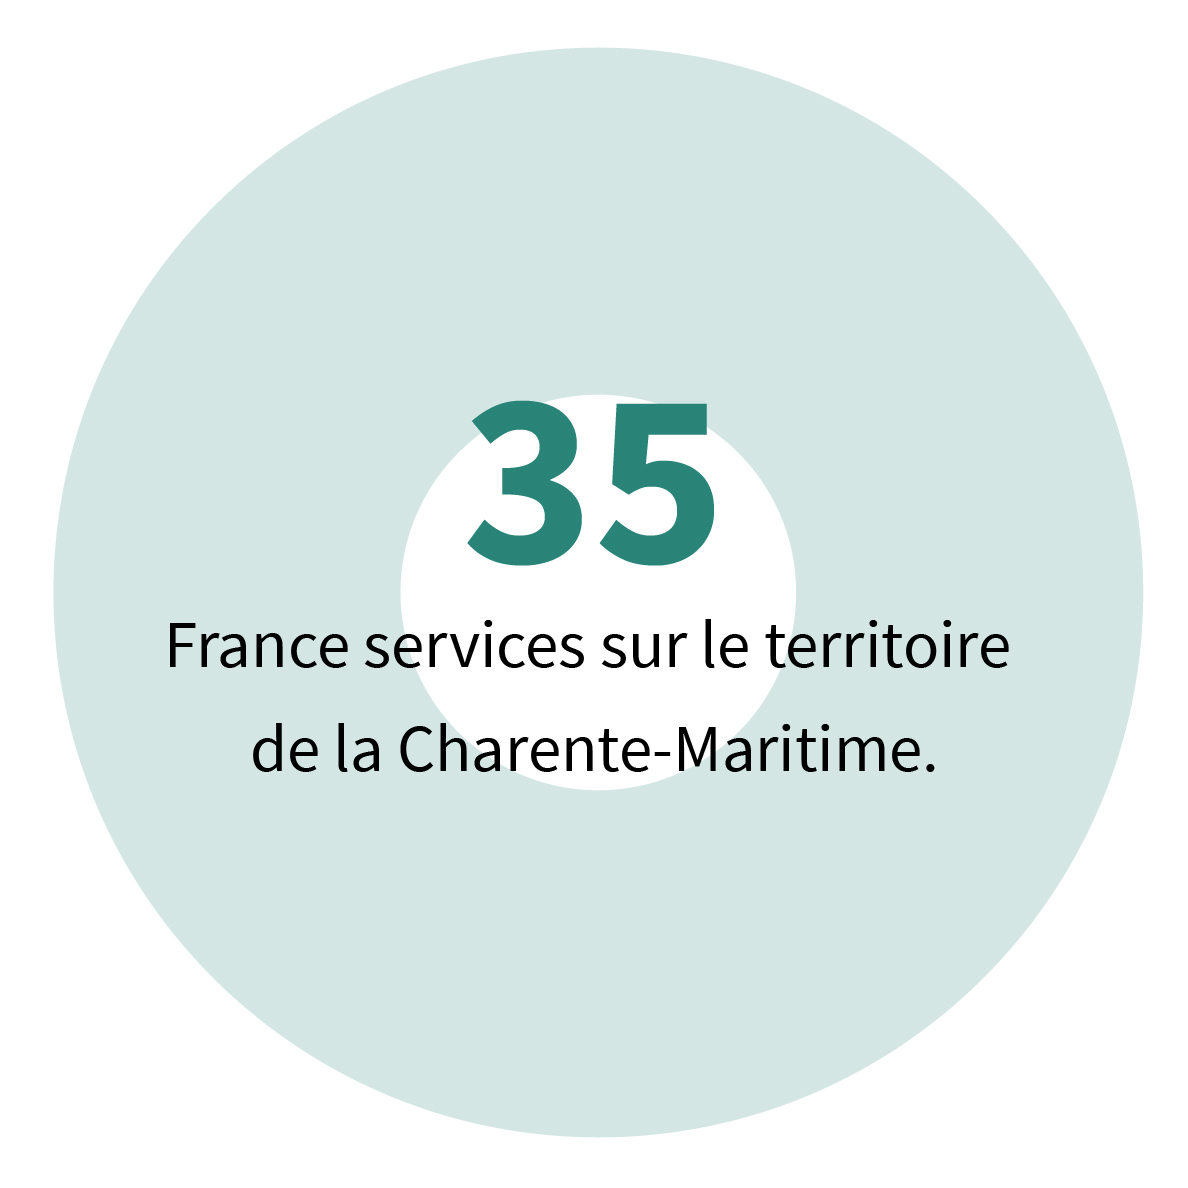 35 France services sur le territoire de la Charente-Maritime.